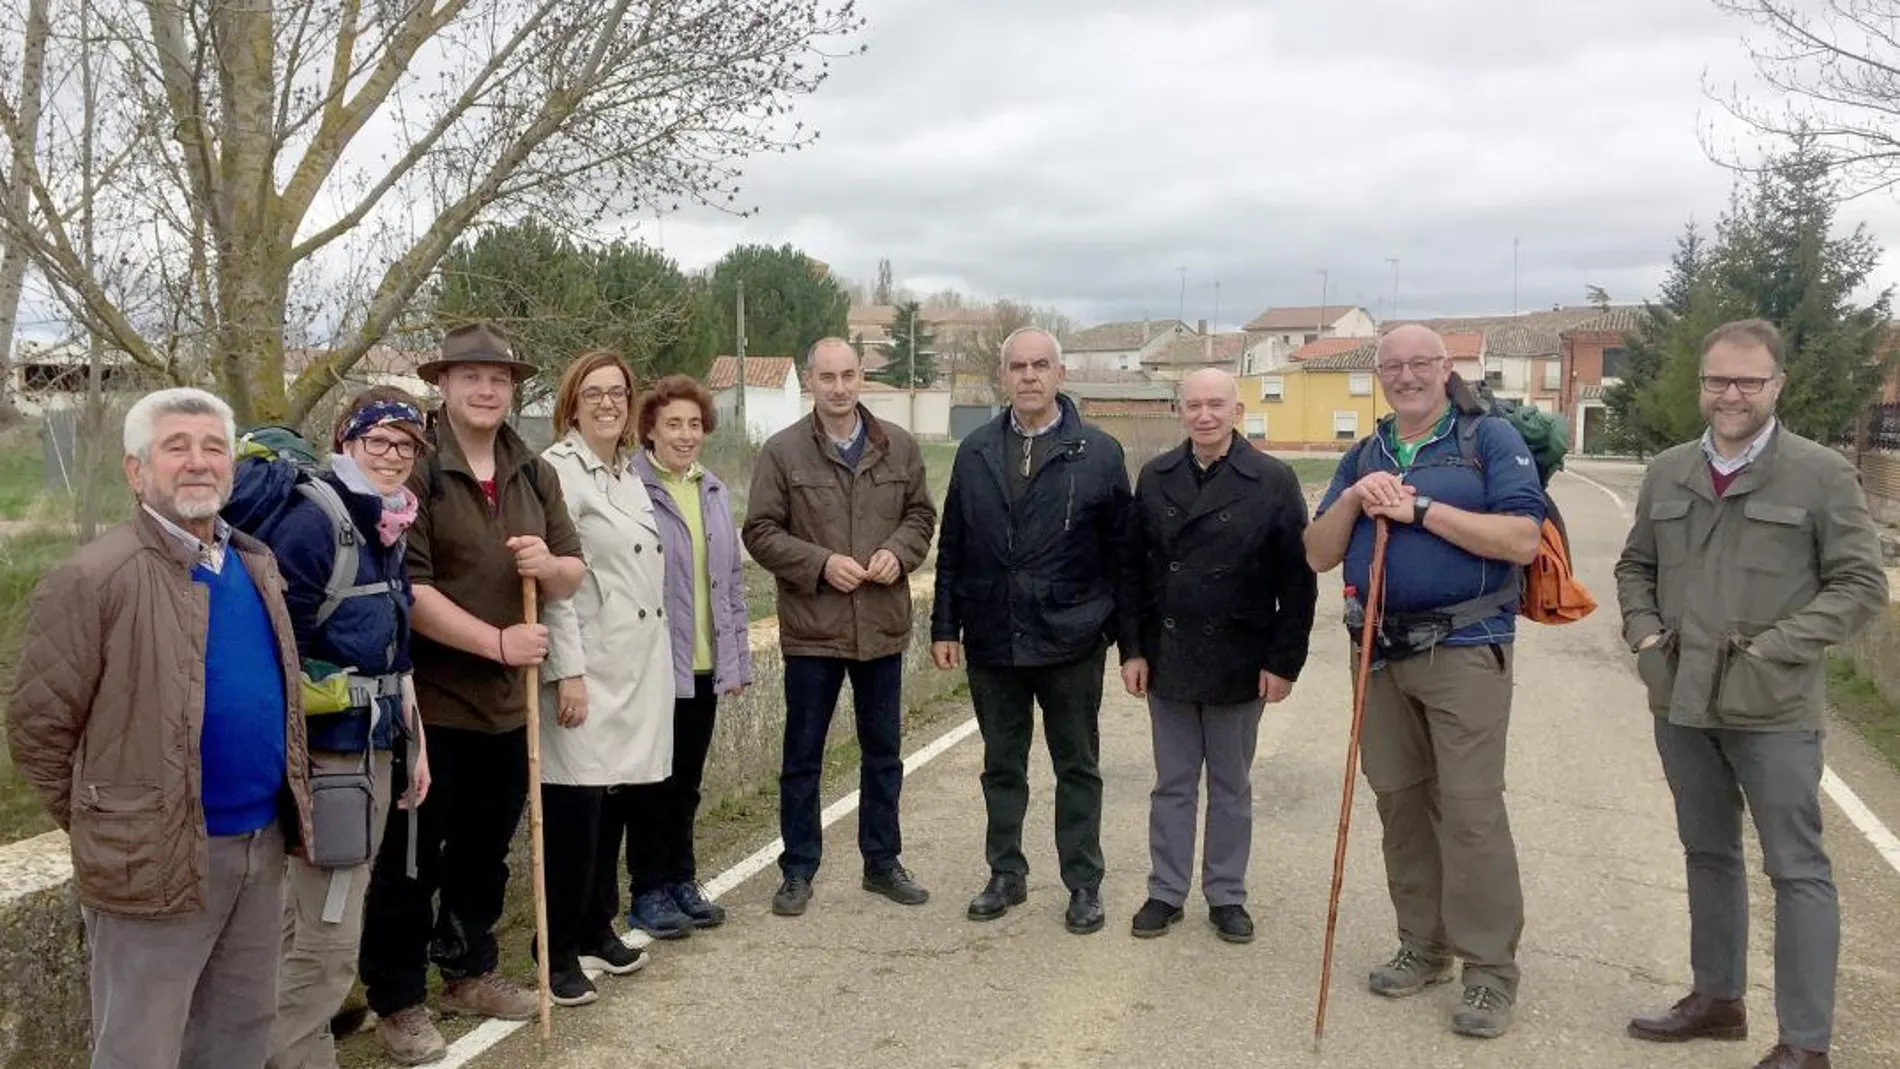 La presidenta de la Diputación de Palencia, Ángeles Armisén, visita el área de descanso